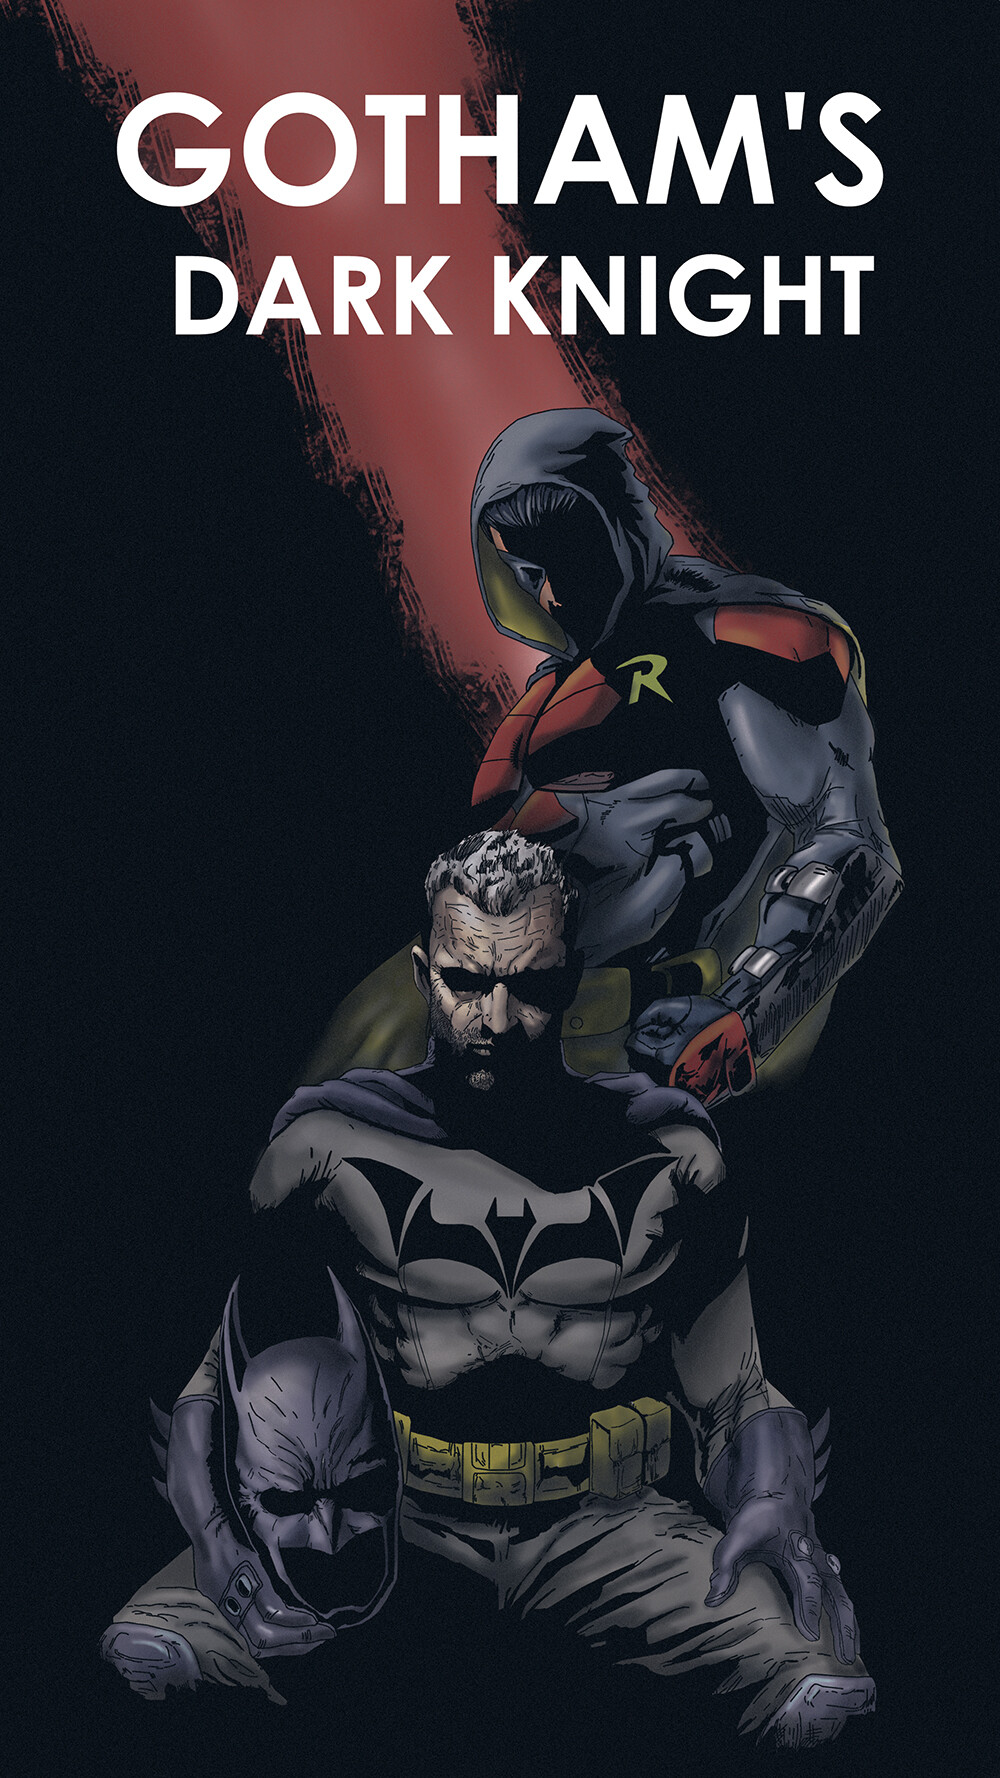 ArtStation - Gotham's Dark Knight: Concept Art